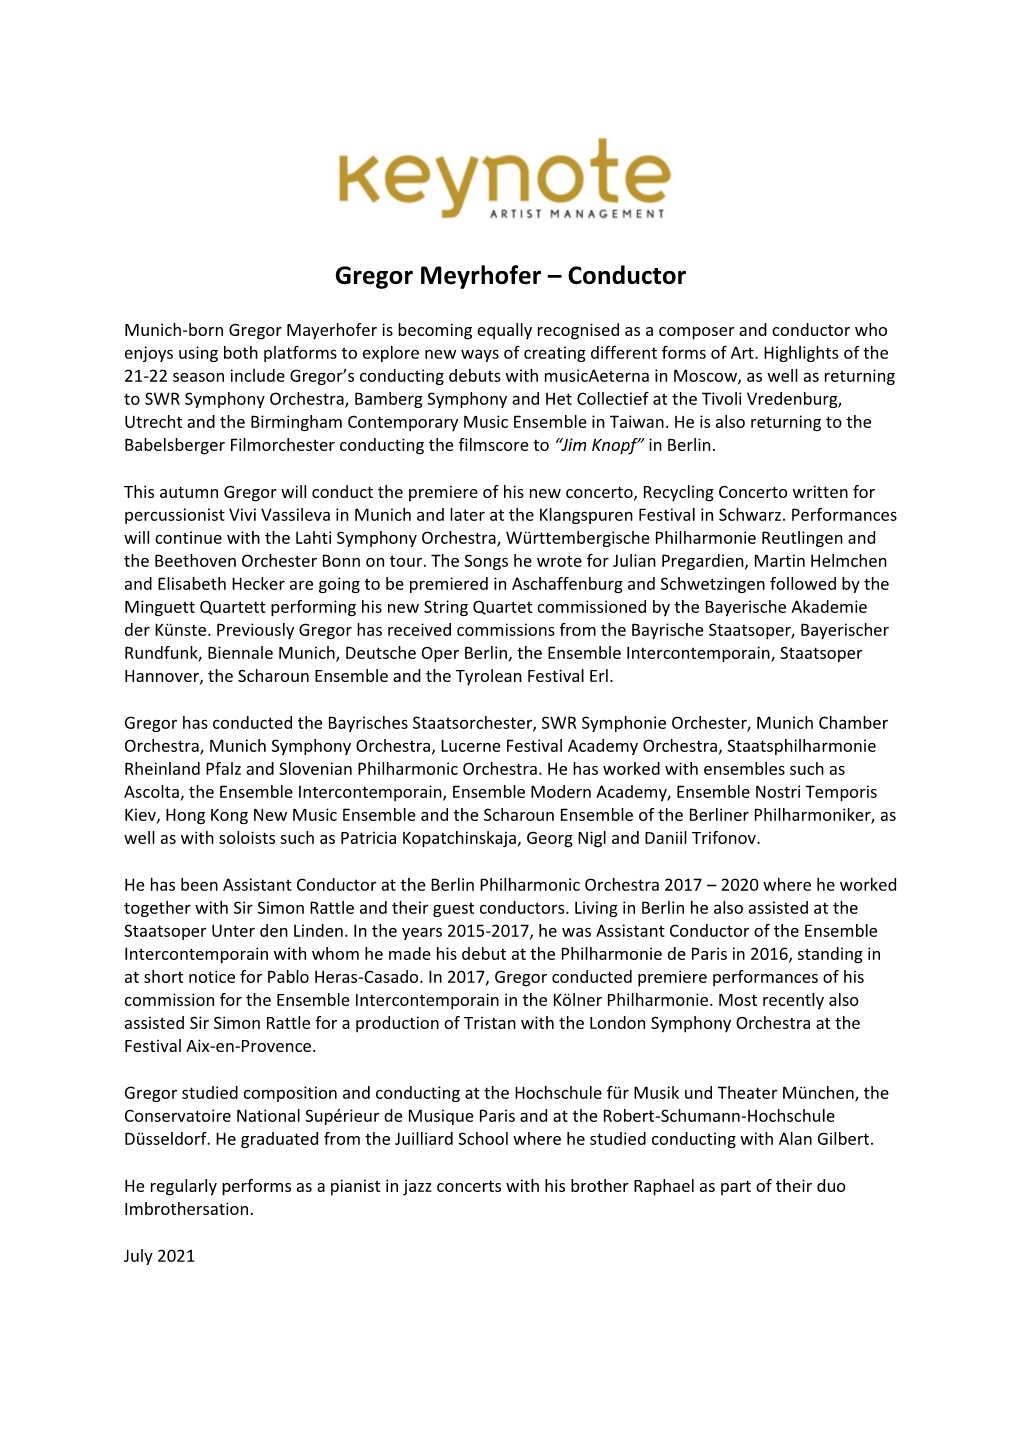 Gregor Mayrhofer Biography